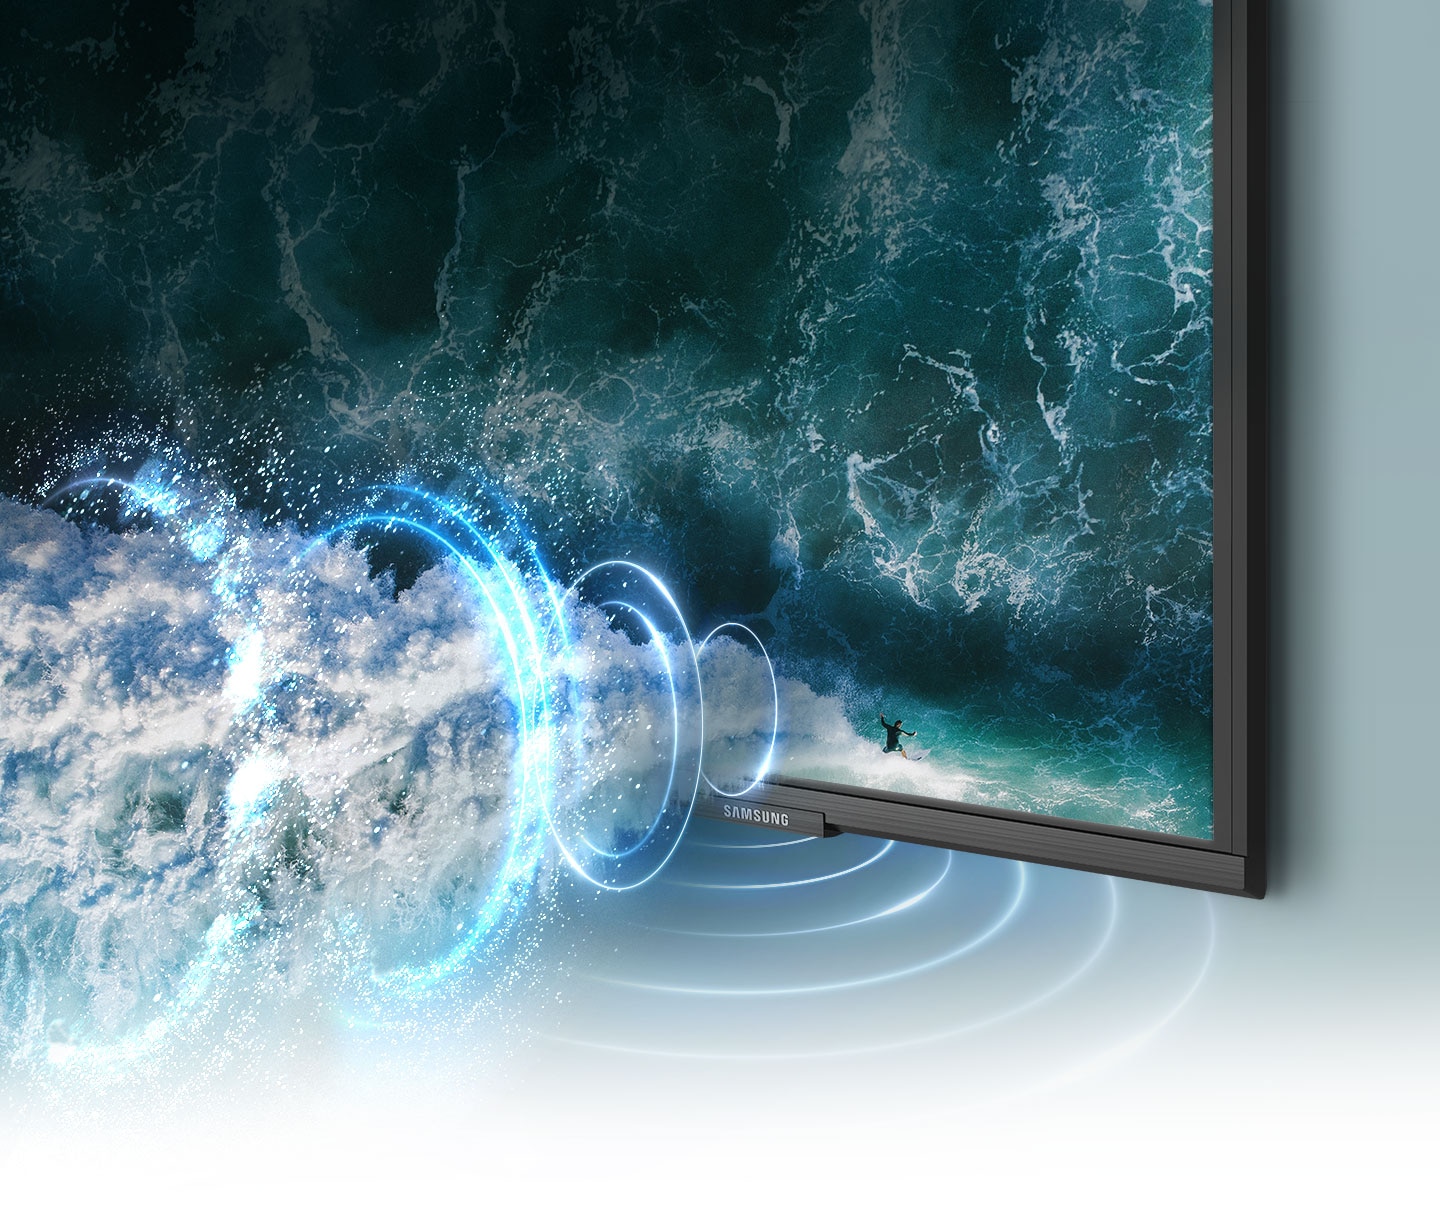 Đồ họa sóng âm thanh mô phỏng thể hiện công nghệ Object Tracking Sound khi nó theo chân người lướt trên màn hình TV.